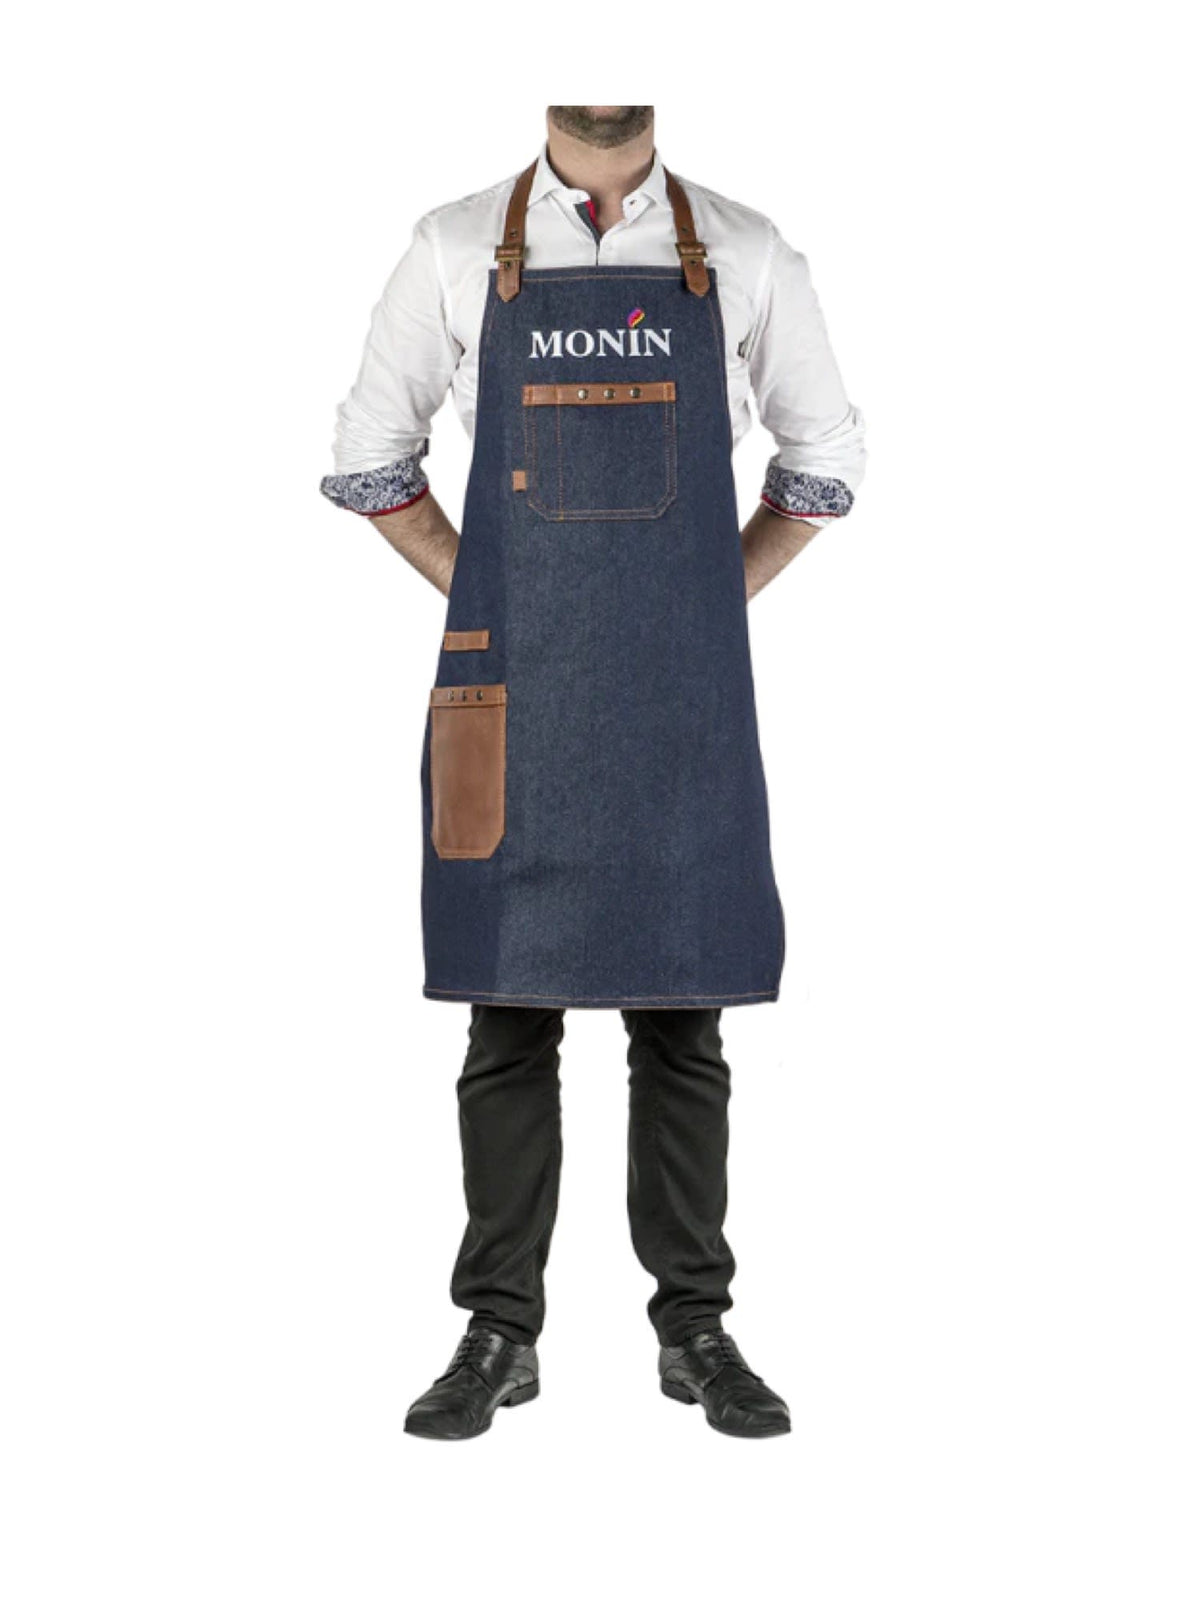 Monin Barista forklæde - Et elegant forklæde med Monin-logoet, perfekt til baristaer og kaffeeentusiaster.